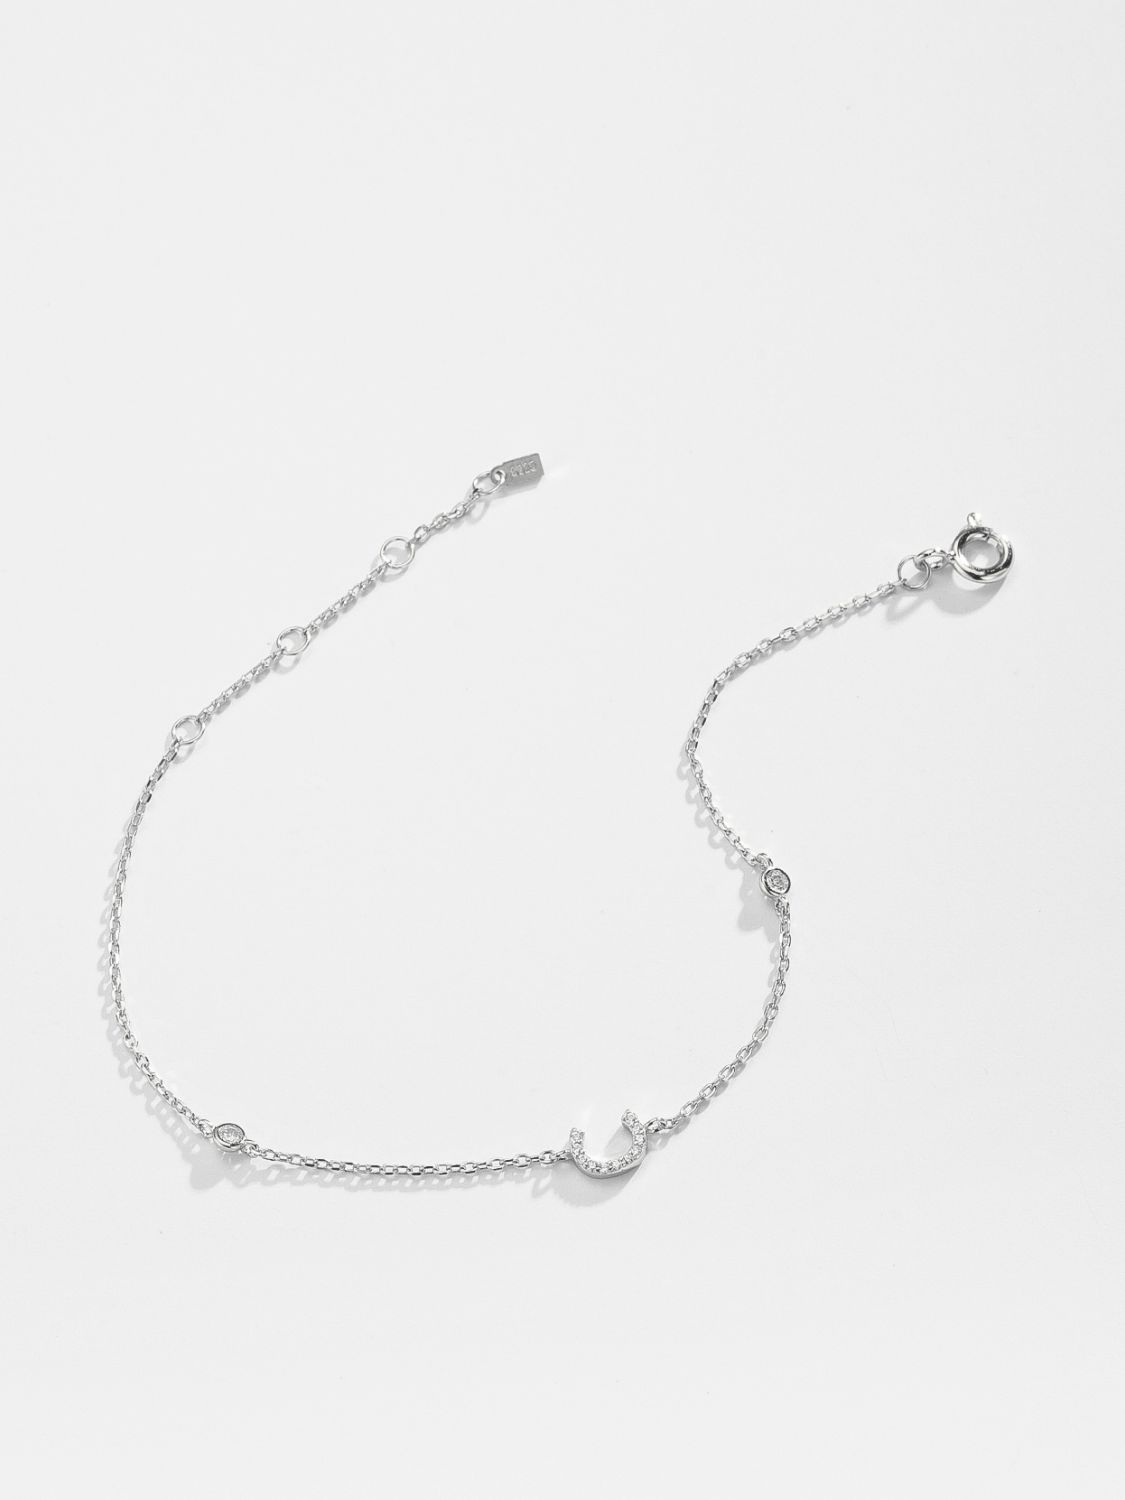 A To F Zircon 925 Sterling Silver Bracelet - Women’s Jewelry - Bracelets - 17 - 2024